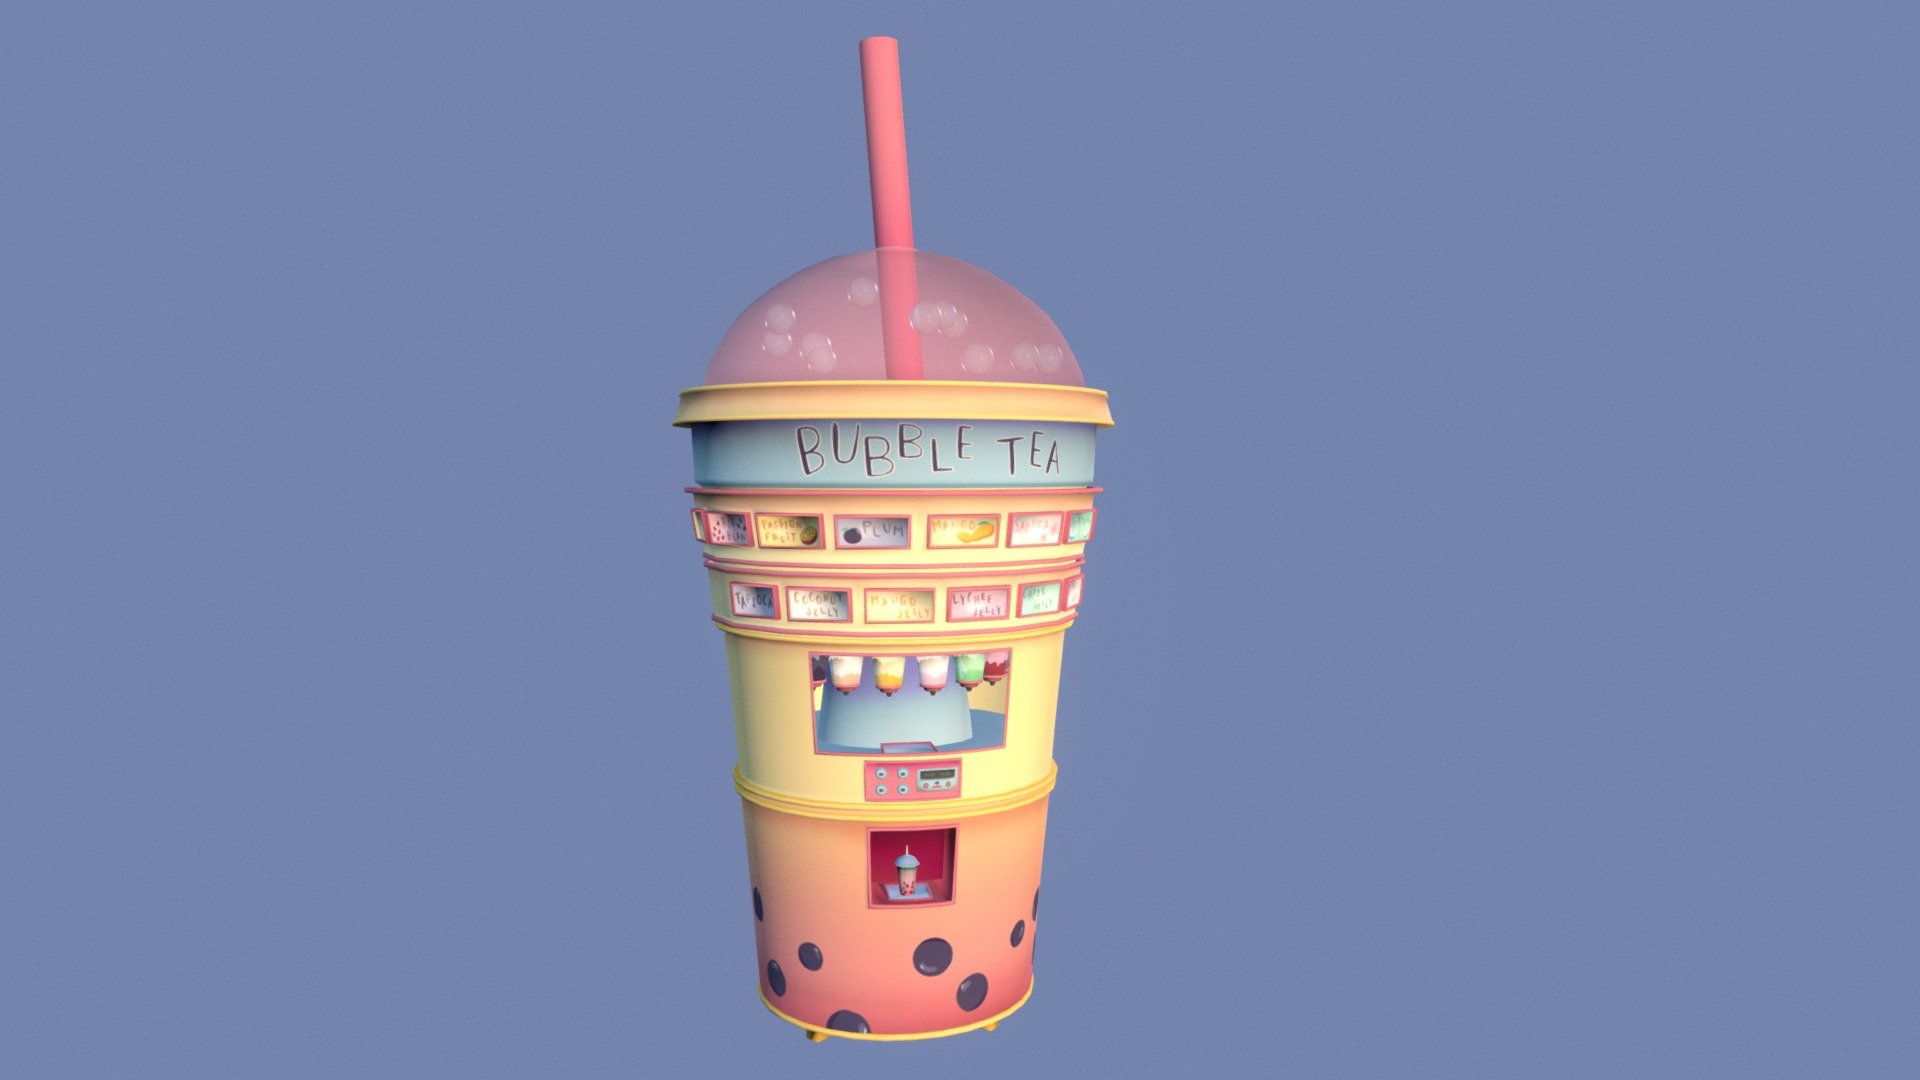 A build-your-own bubble tea vending machine! - Bubble Tea Vending Machine - 3D model by Nicole (@nicolioos) 3d model